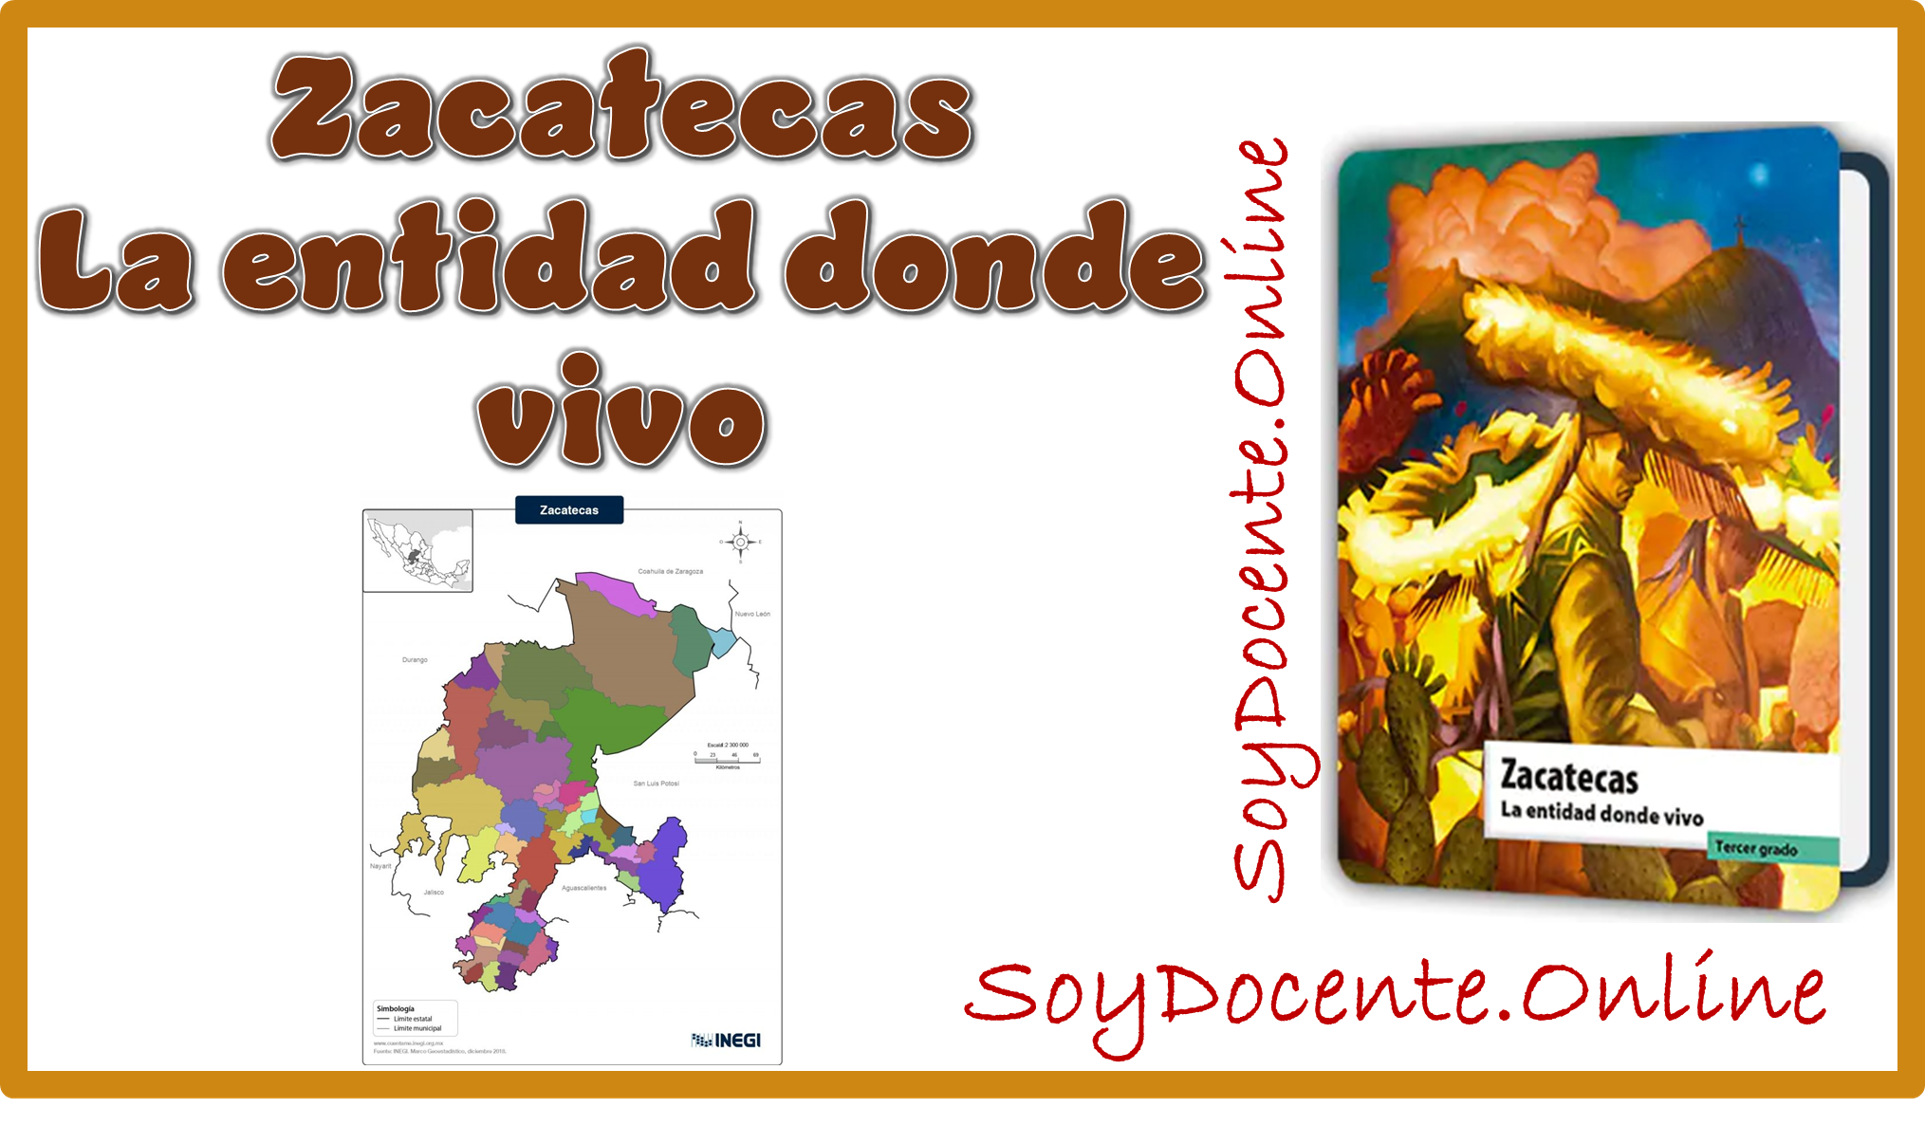 Ahora ya puedes descargar el Libro de Zacatecas La entidad donde vivo tercer grado de Primaria en PDF, elaborado por la SEP, distribuido por la CONALITEG.